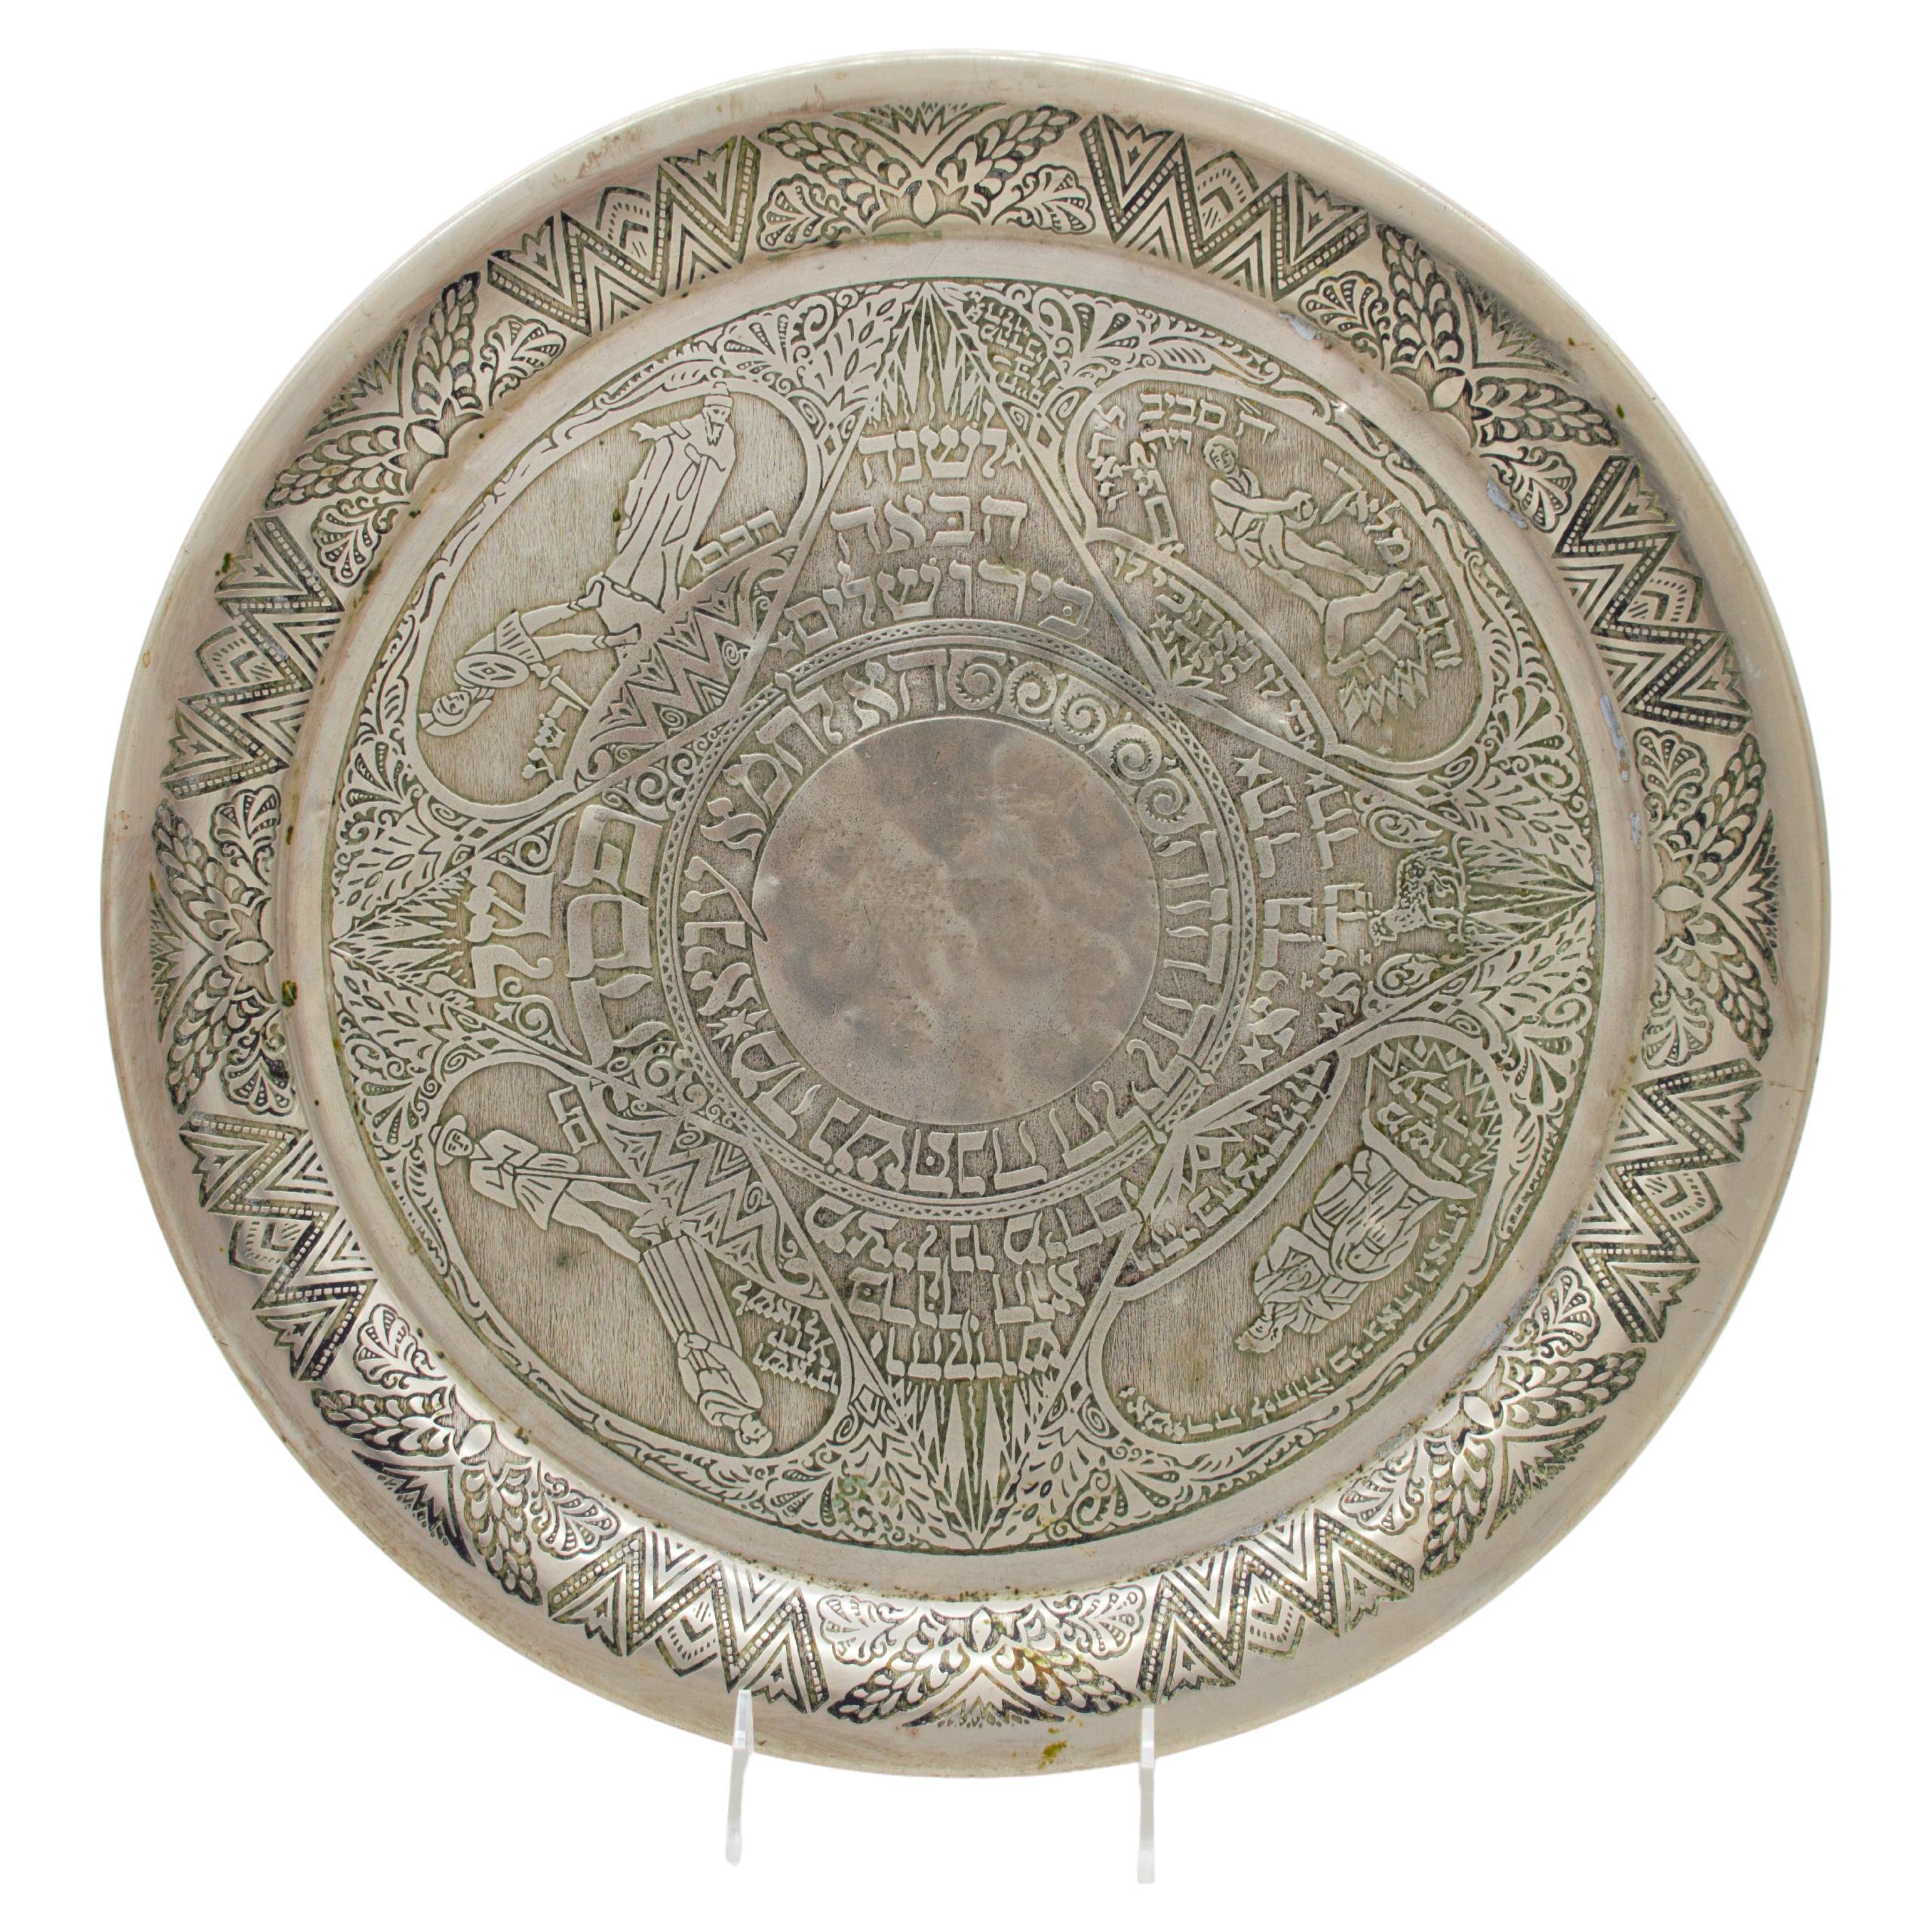 Decorative Judaica Passover plate by Heinrich Schwed. Munich, 1924. 